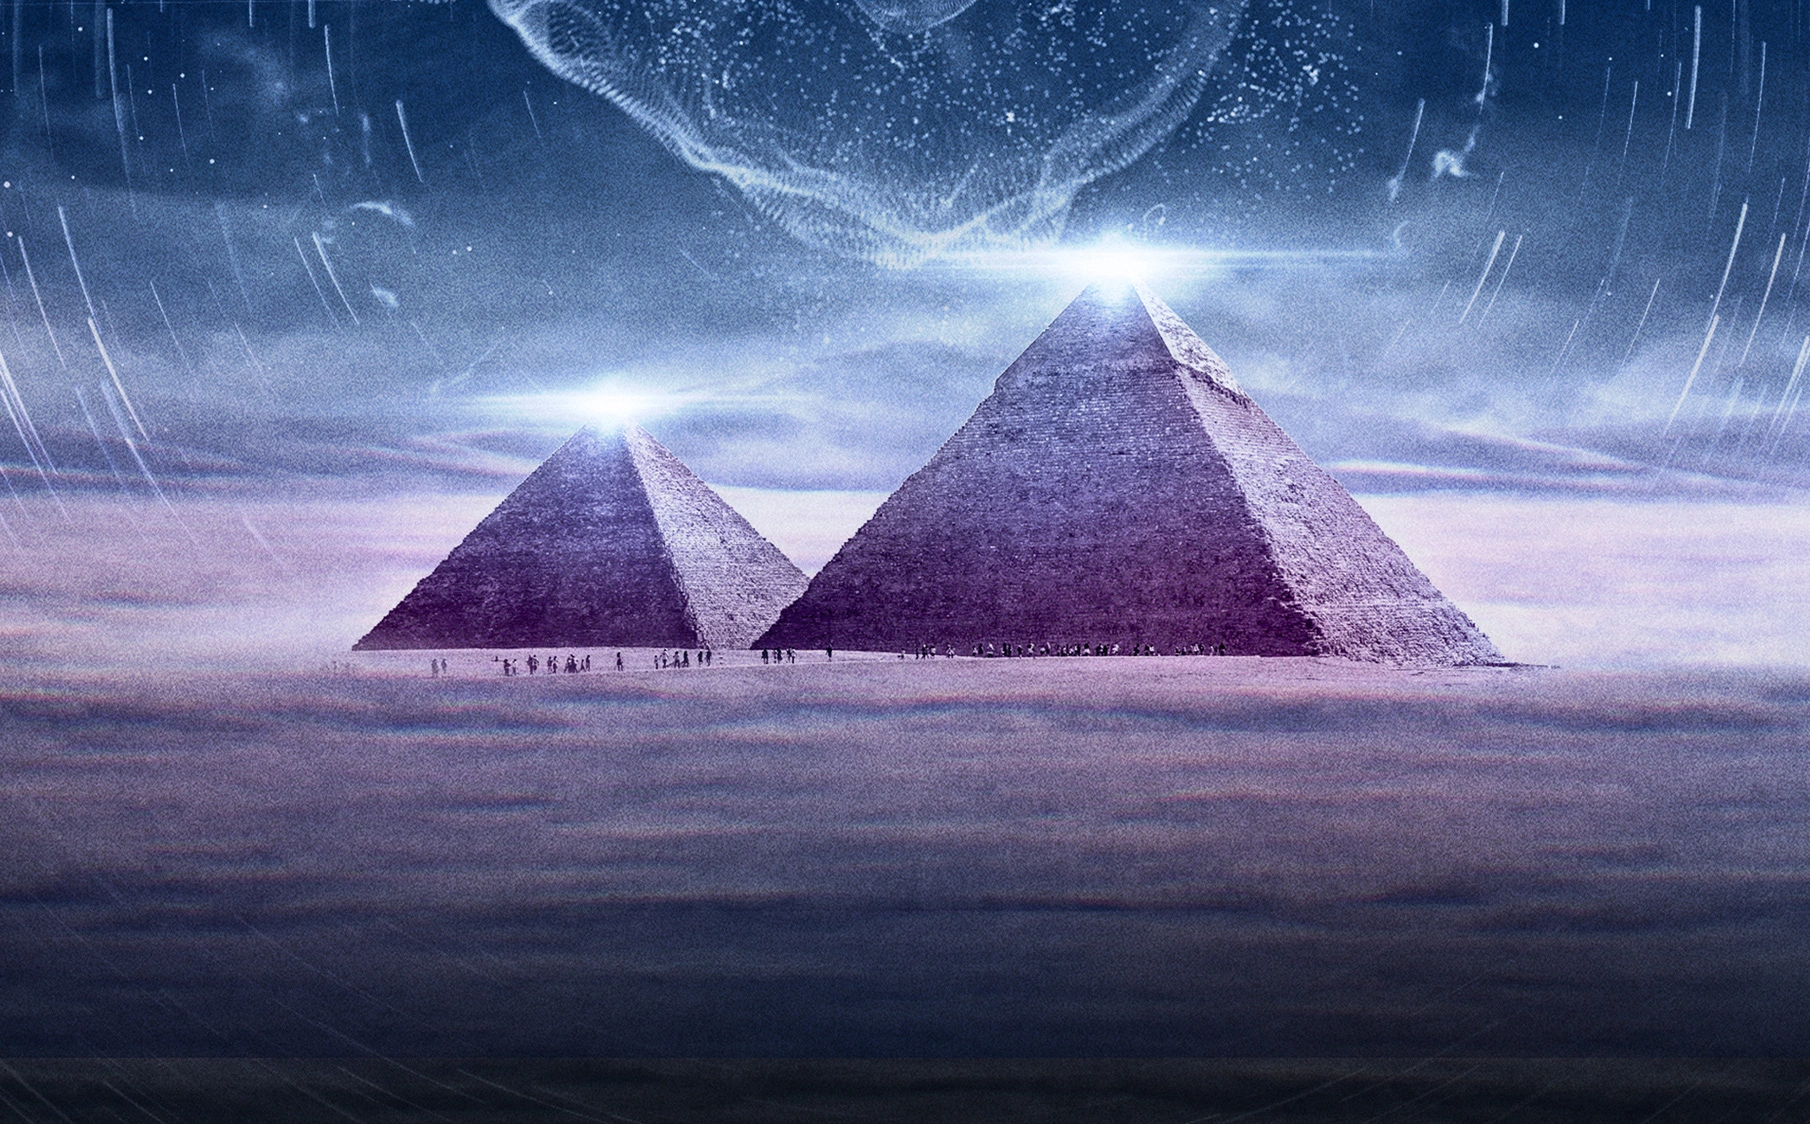 Phát hiện đỉnh kim tự tháp 33.000 năm tuổi phát ra sóng bí ẩn gửi vào không gian: Người ngoài hành tinh đang giao tiếp với nhau?